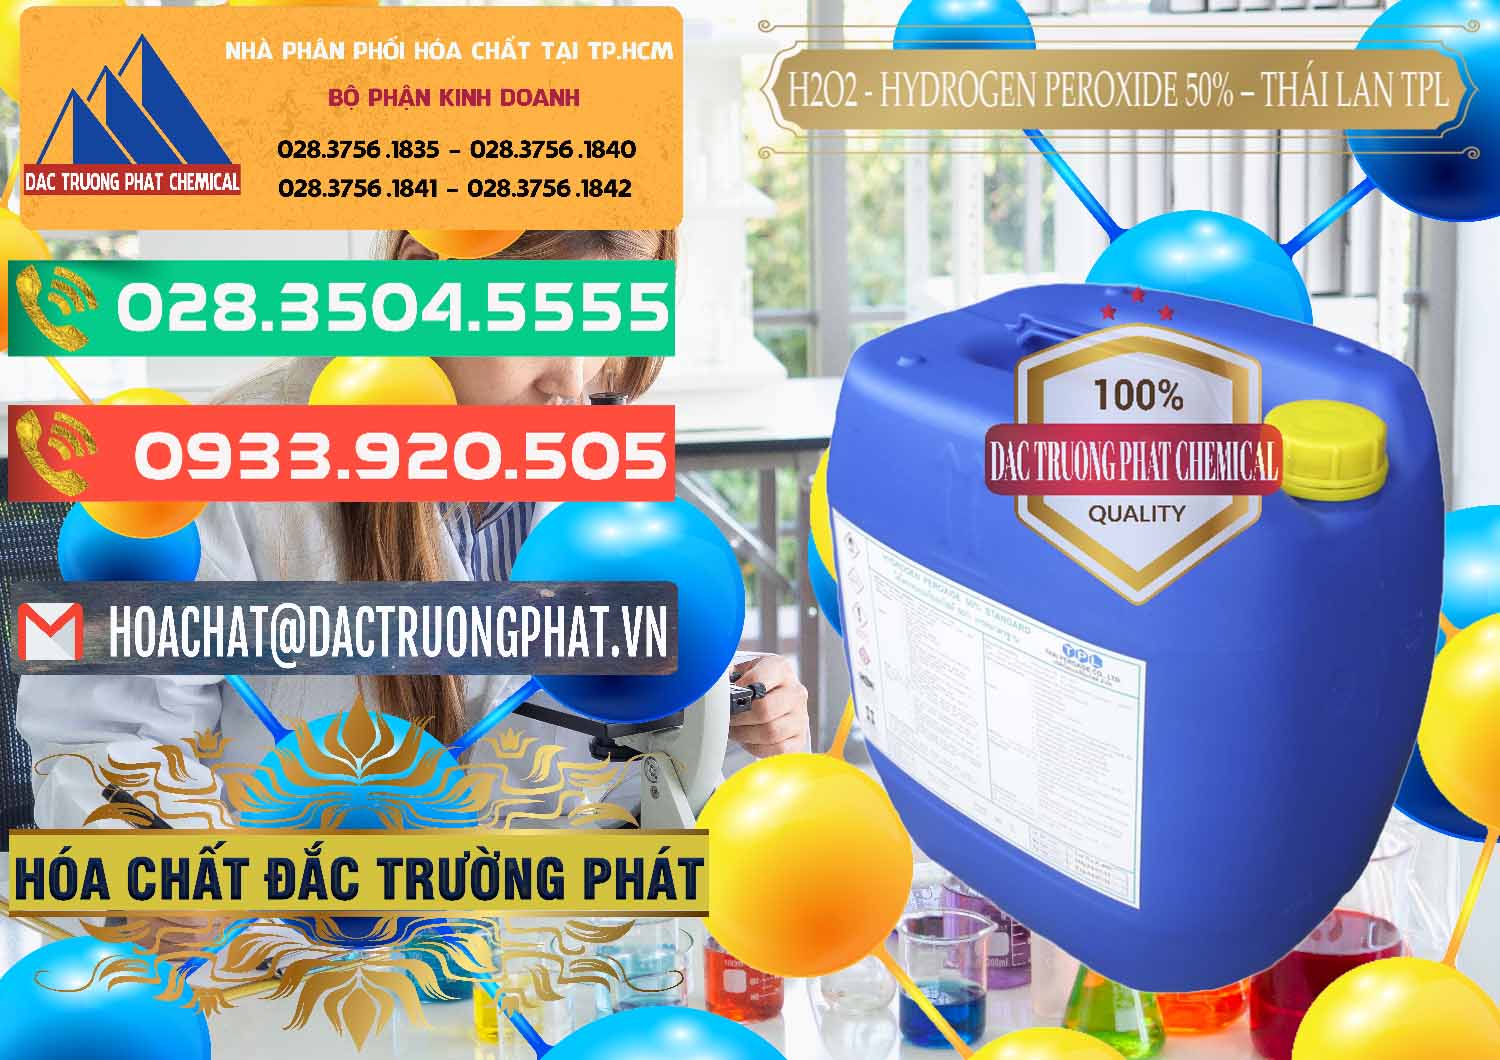 Công ty chuyên nhập khẩu & bán H2O2 - Hydrogen Peroxide 50% Thái Lan TPL - 0076 - Nơi chuyên nhập khẩu và phân phối hóa chất tại TP.HCM - congtyhoachat.com.vn